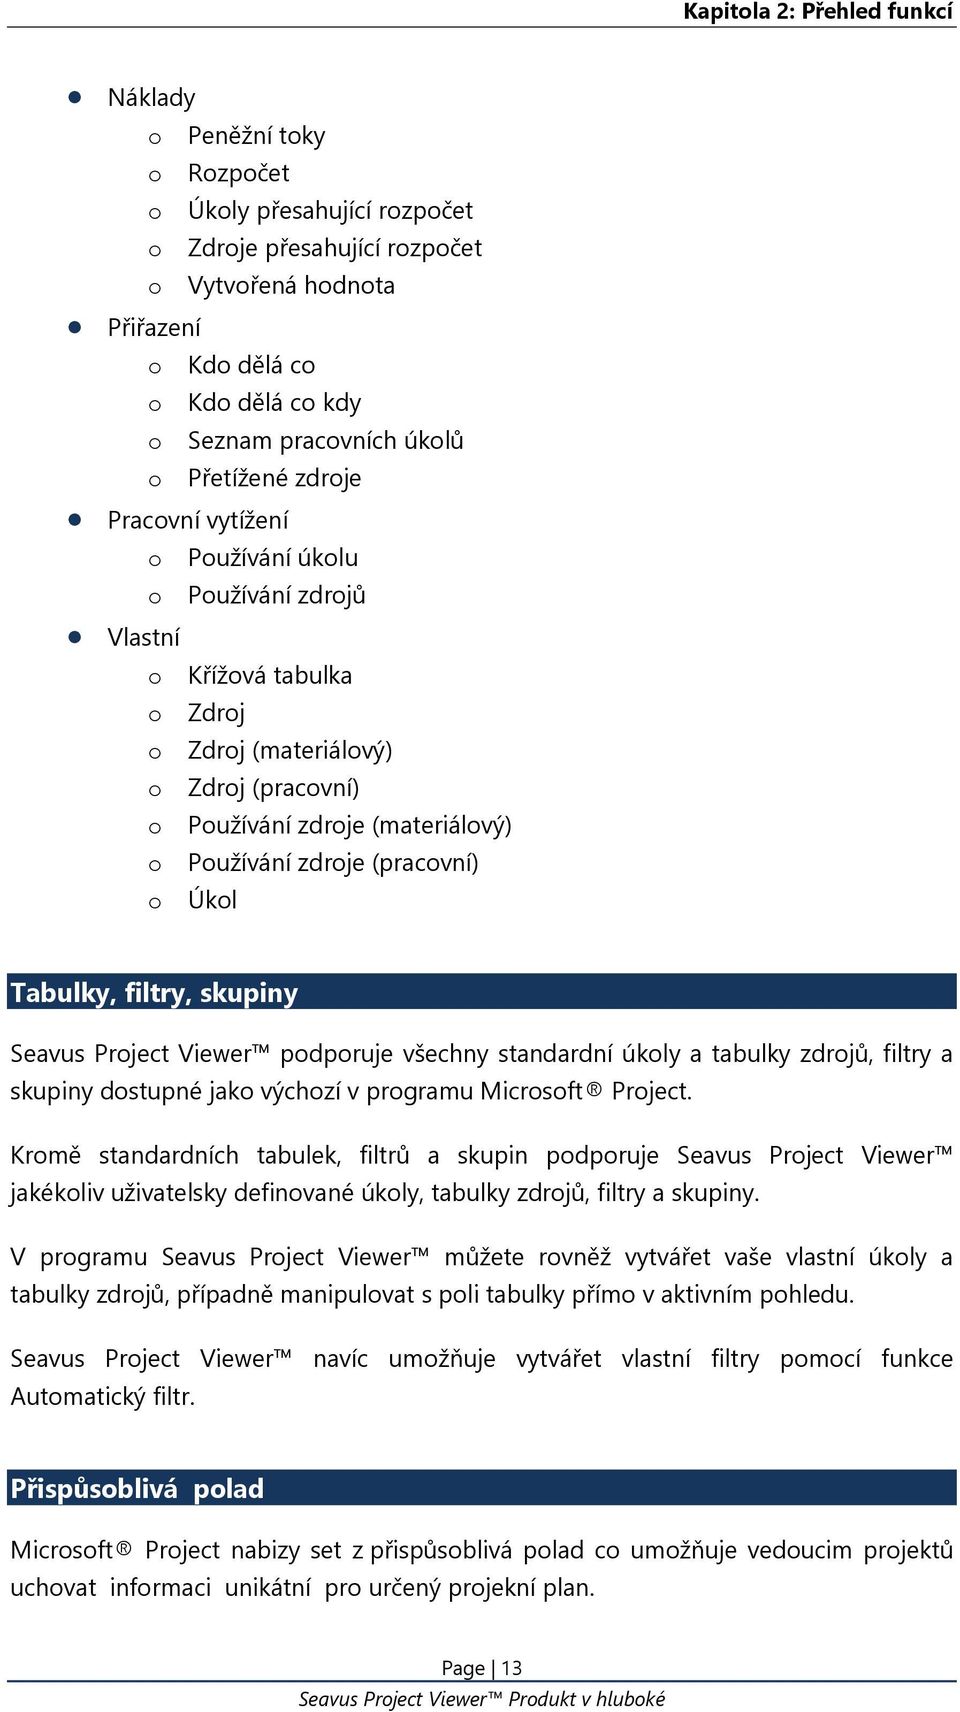 o Používání zdroje (pracovní) o Úkol Tabulky, filtry, skupiny Seavus Project Viewer podporuje všechny standardní úkoly a tabulky zdrojů, filtry a skupiny dostupné jako výchozí v programu Microsoft